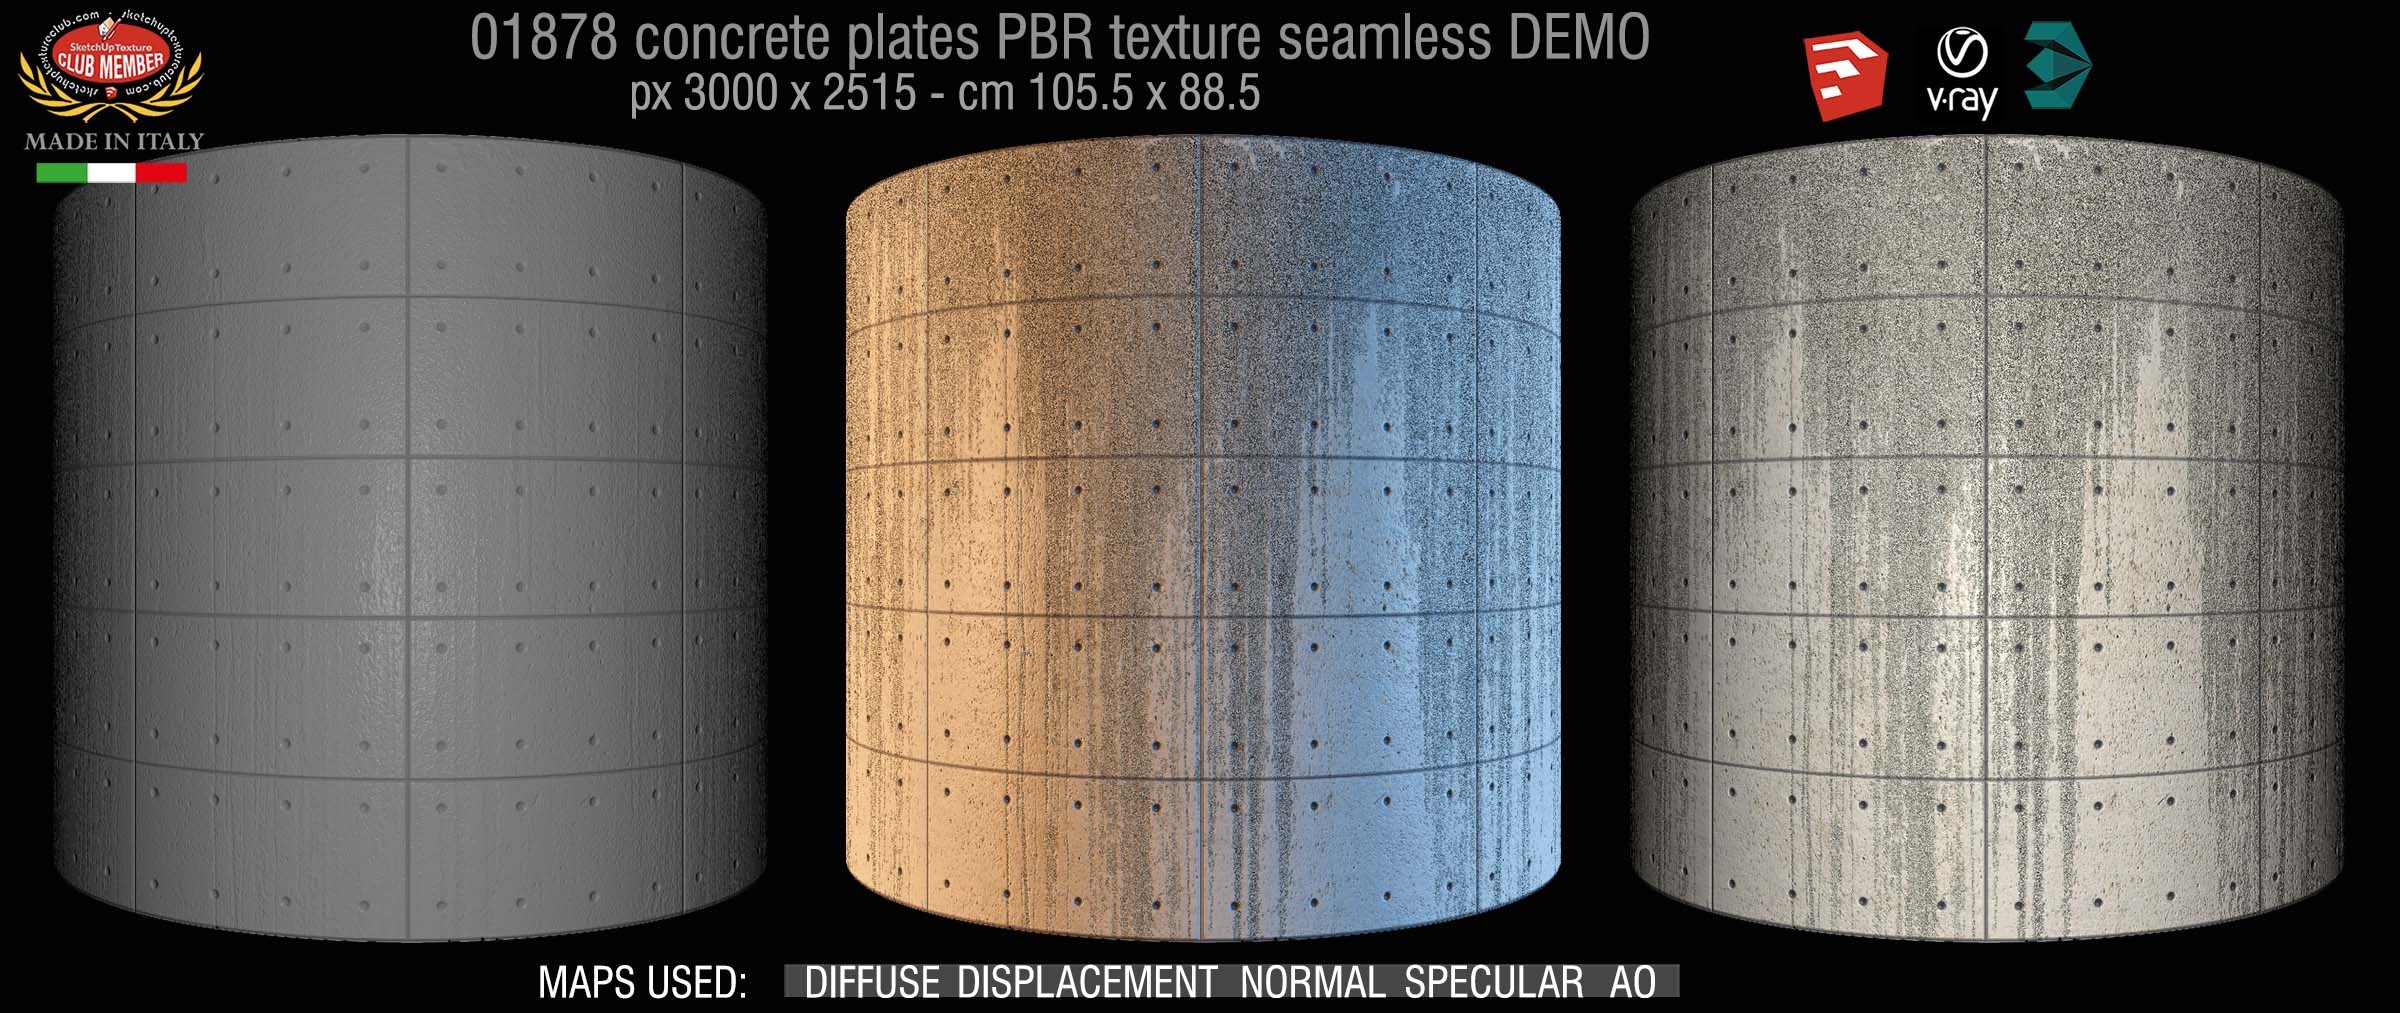 01878 Tadao Ando concrete plates PBR texture seamless DEMO